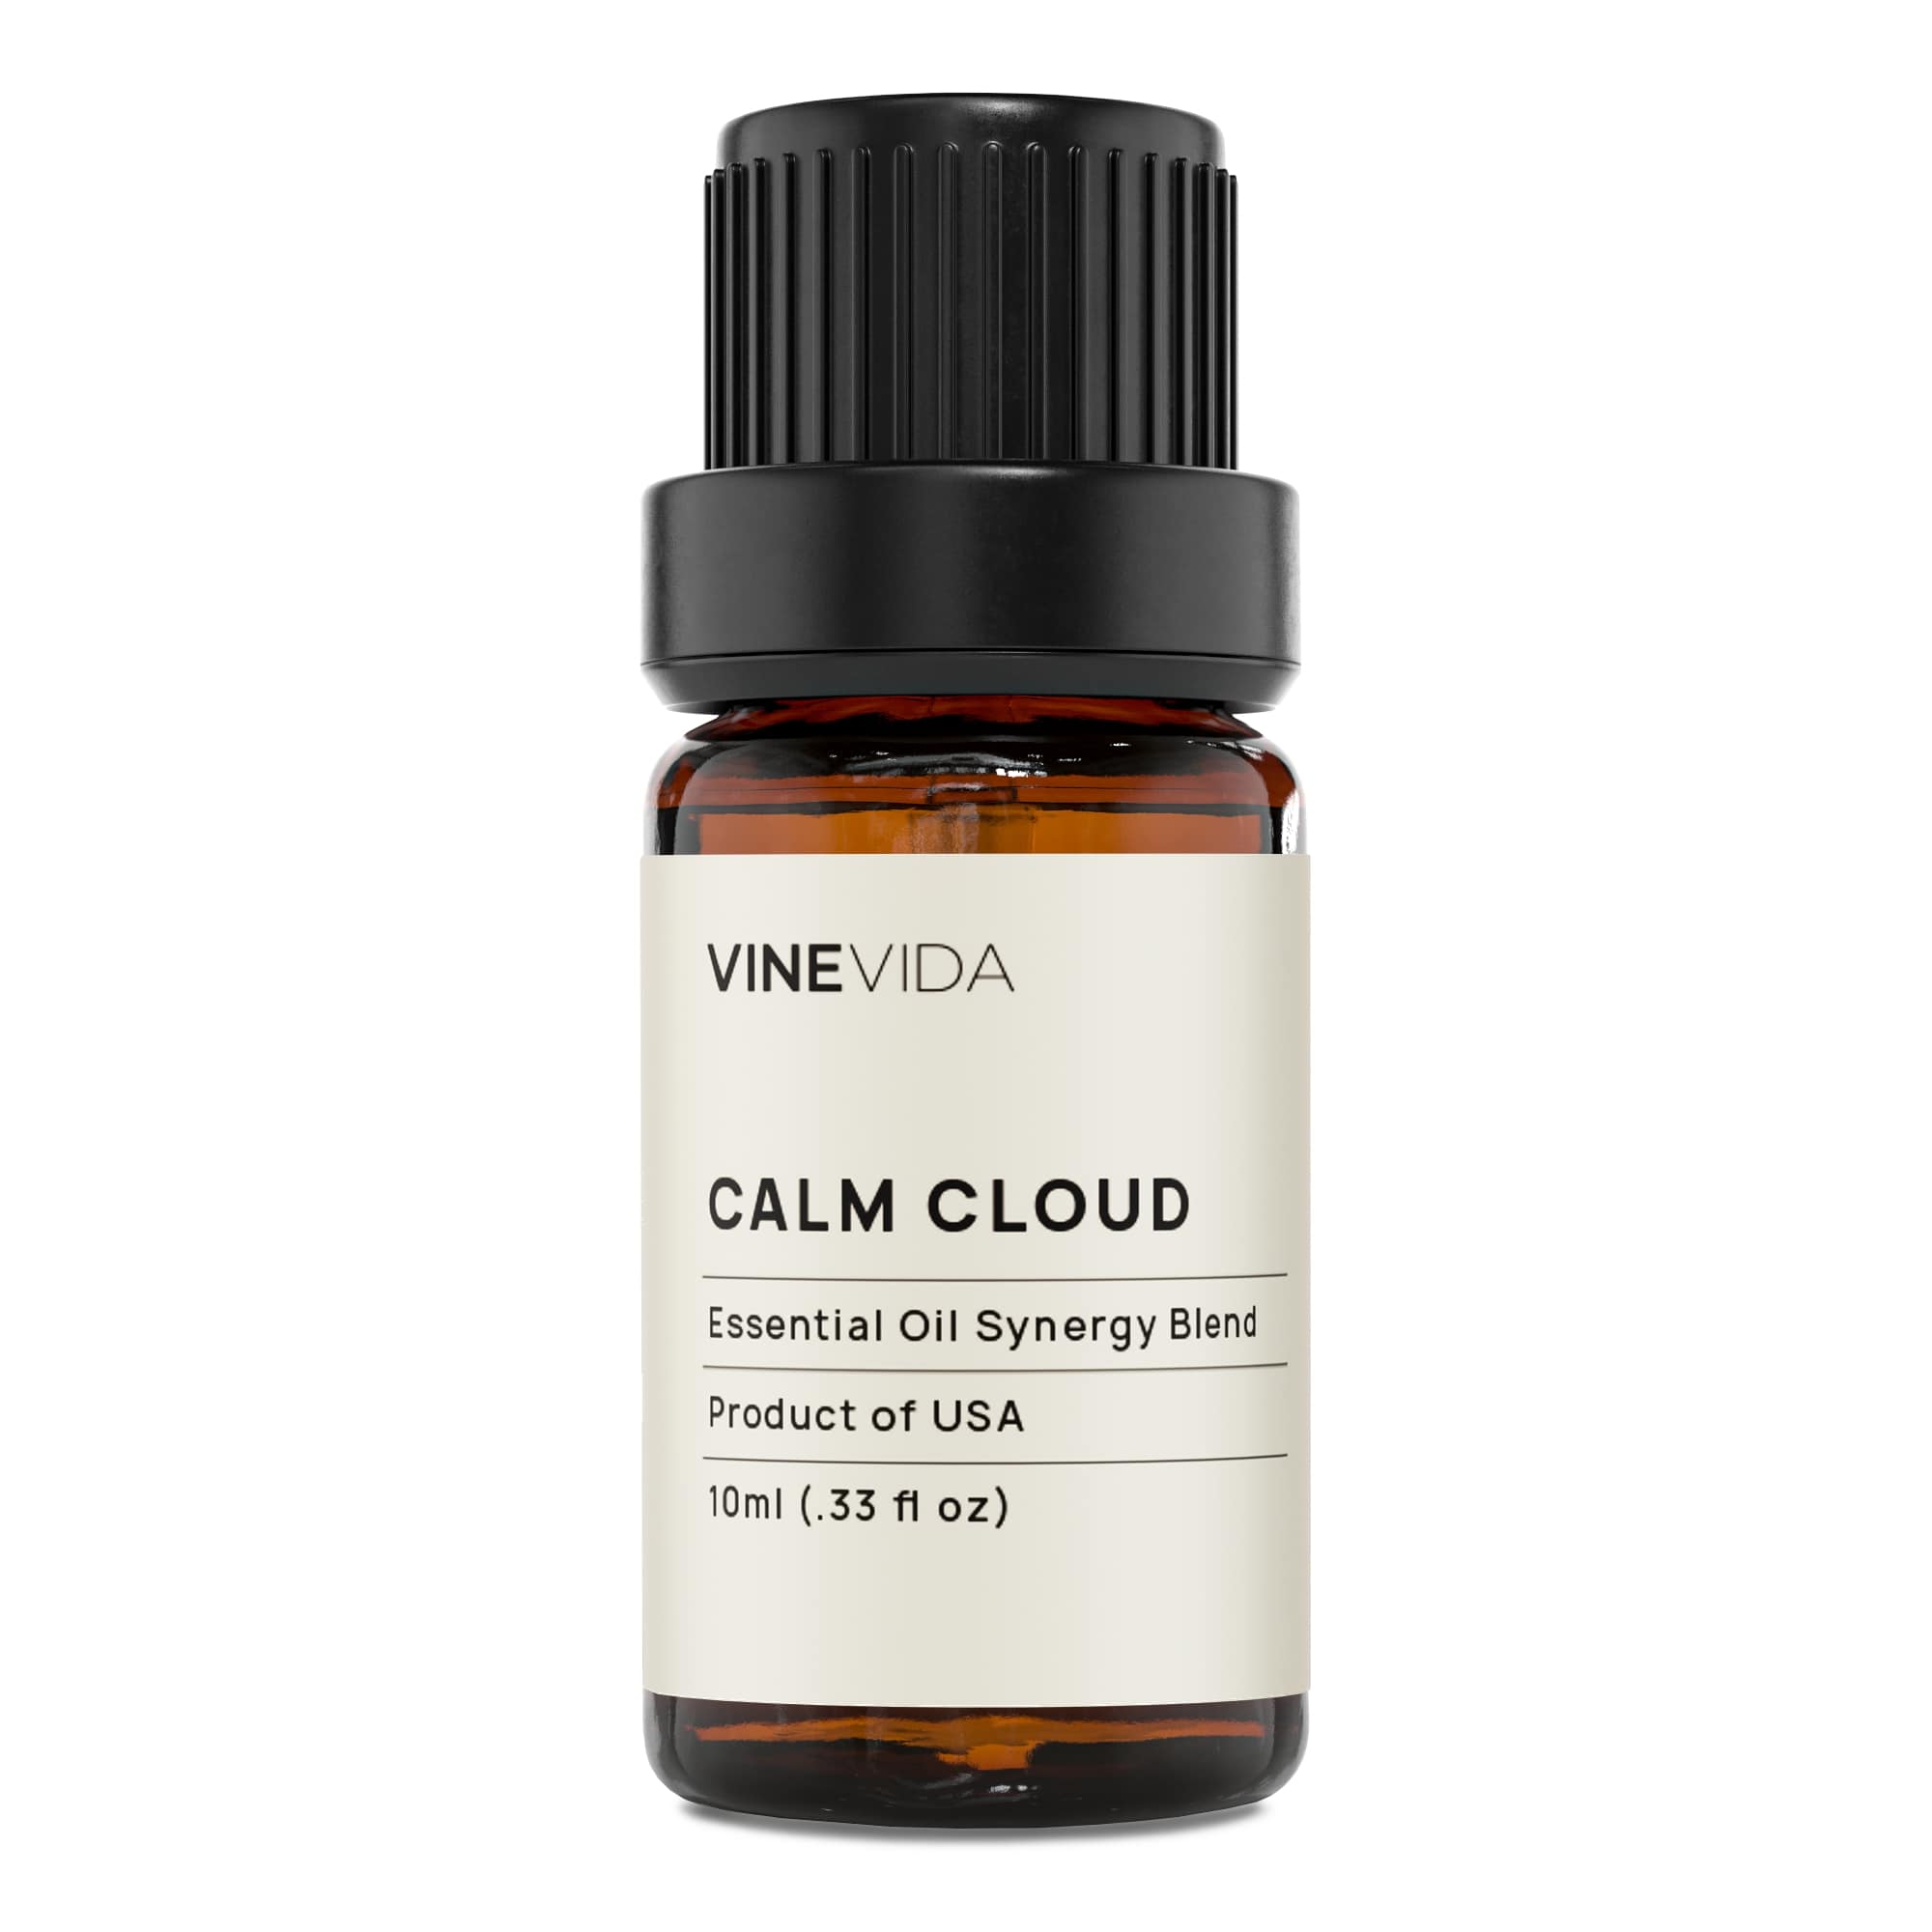 Calm Cloud Synergy Blend